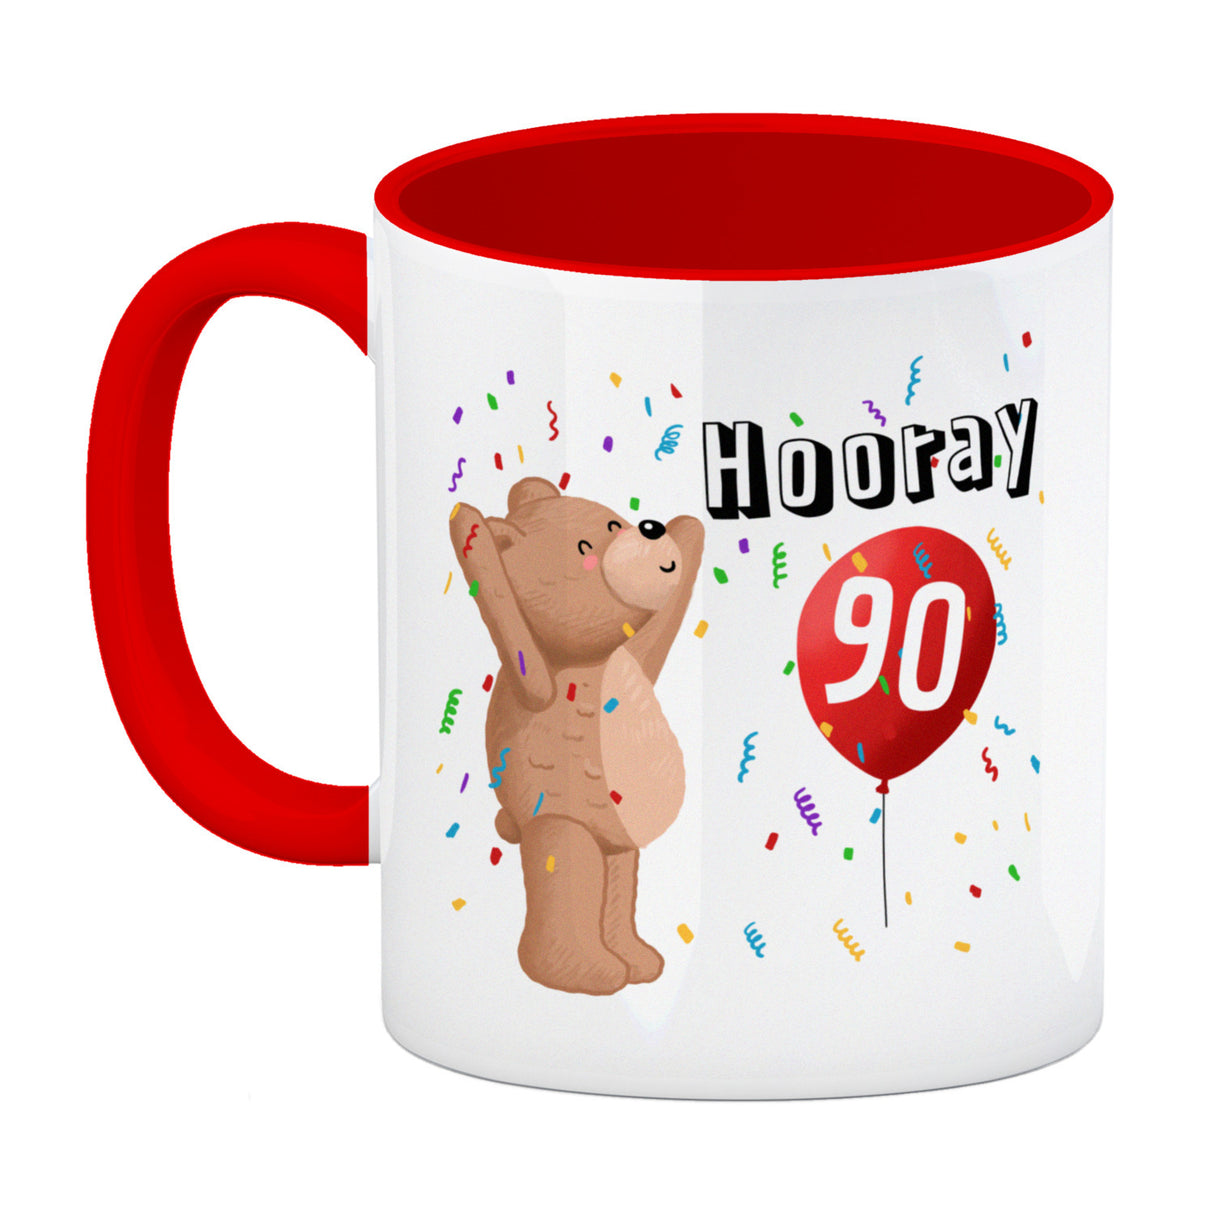 Witziger Kaffeebecher für den 90. Geburtstag mit Motiv: Hooray